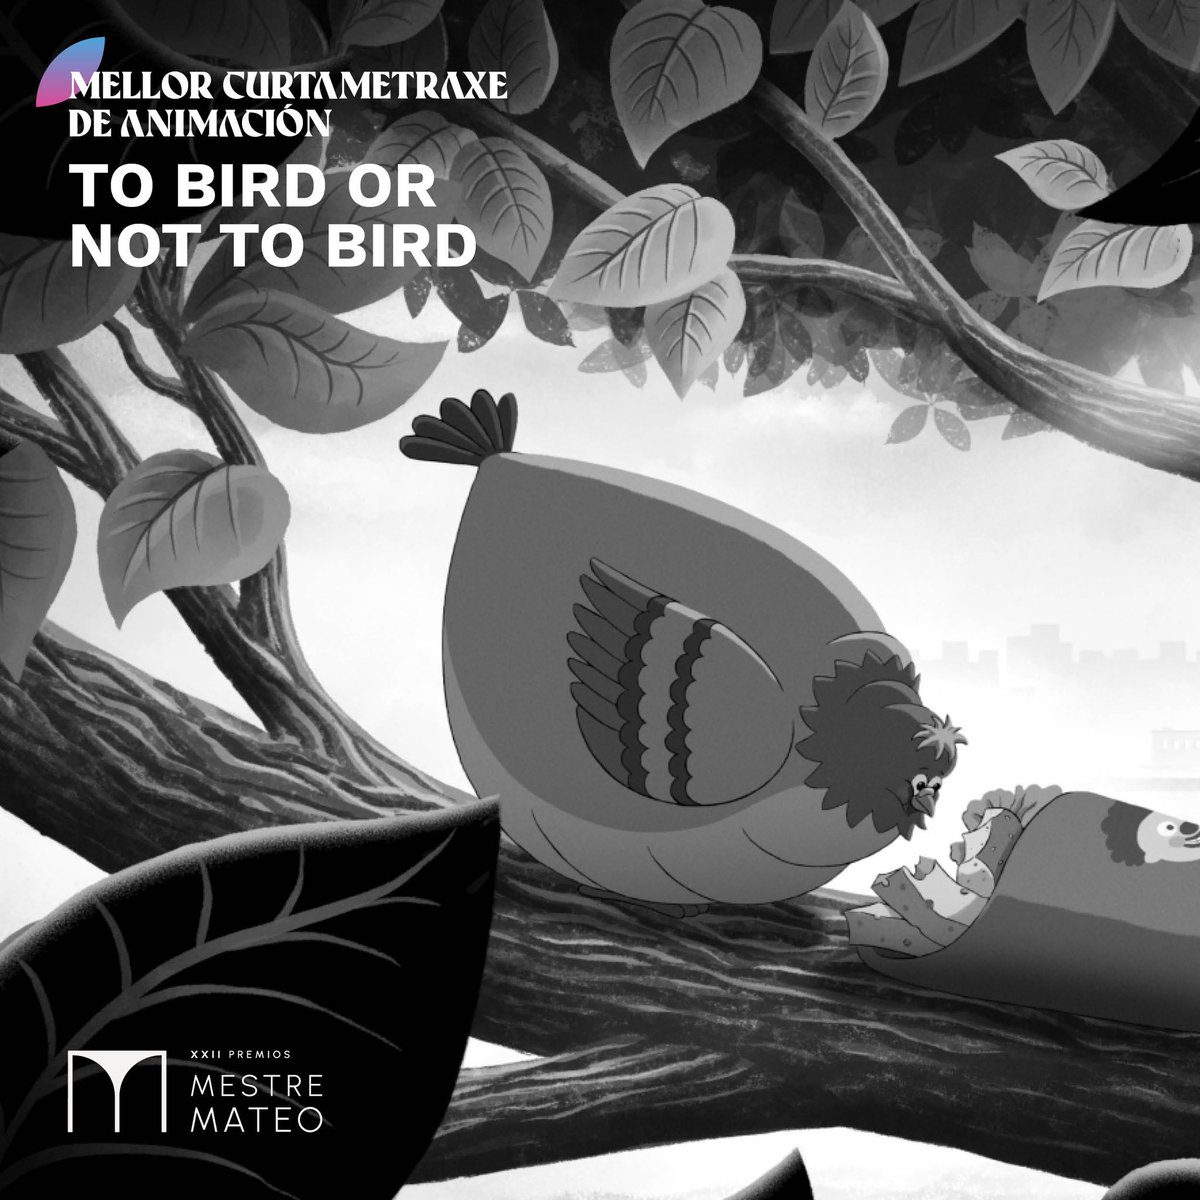 XXII #PremiosMestreMateo 🏆MELLOR CURTAMETRAXE DE ANIMACIÓN 🎬To bird or not to bird @AbanoProducions @unikoec @GranxaOCancelo @estrellagalicia @ConcelloCoruna @CulturaXunta @DACCultura @TVGalicia